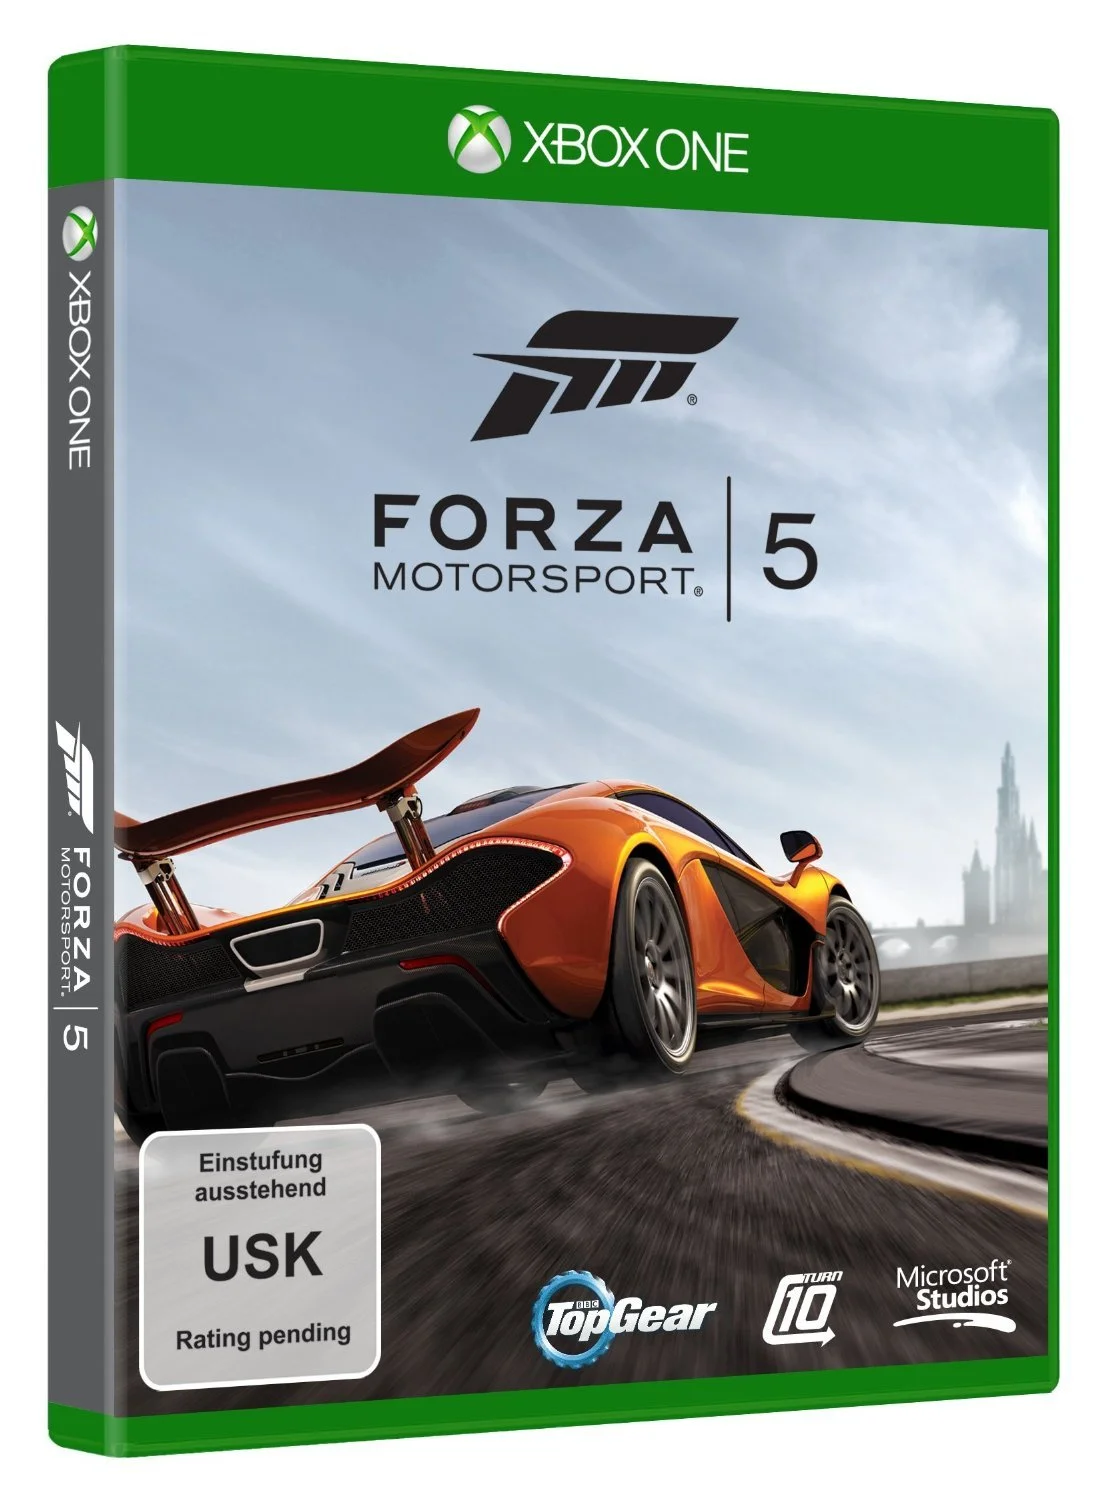 Опубликован дизайн дисков для Xbox One - фото 1